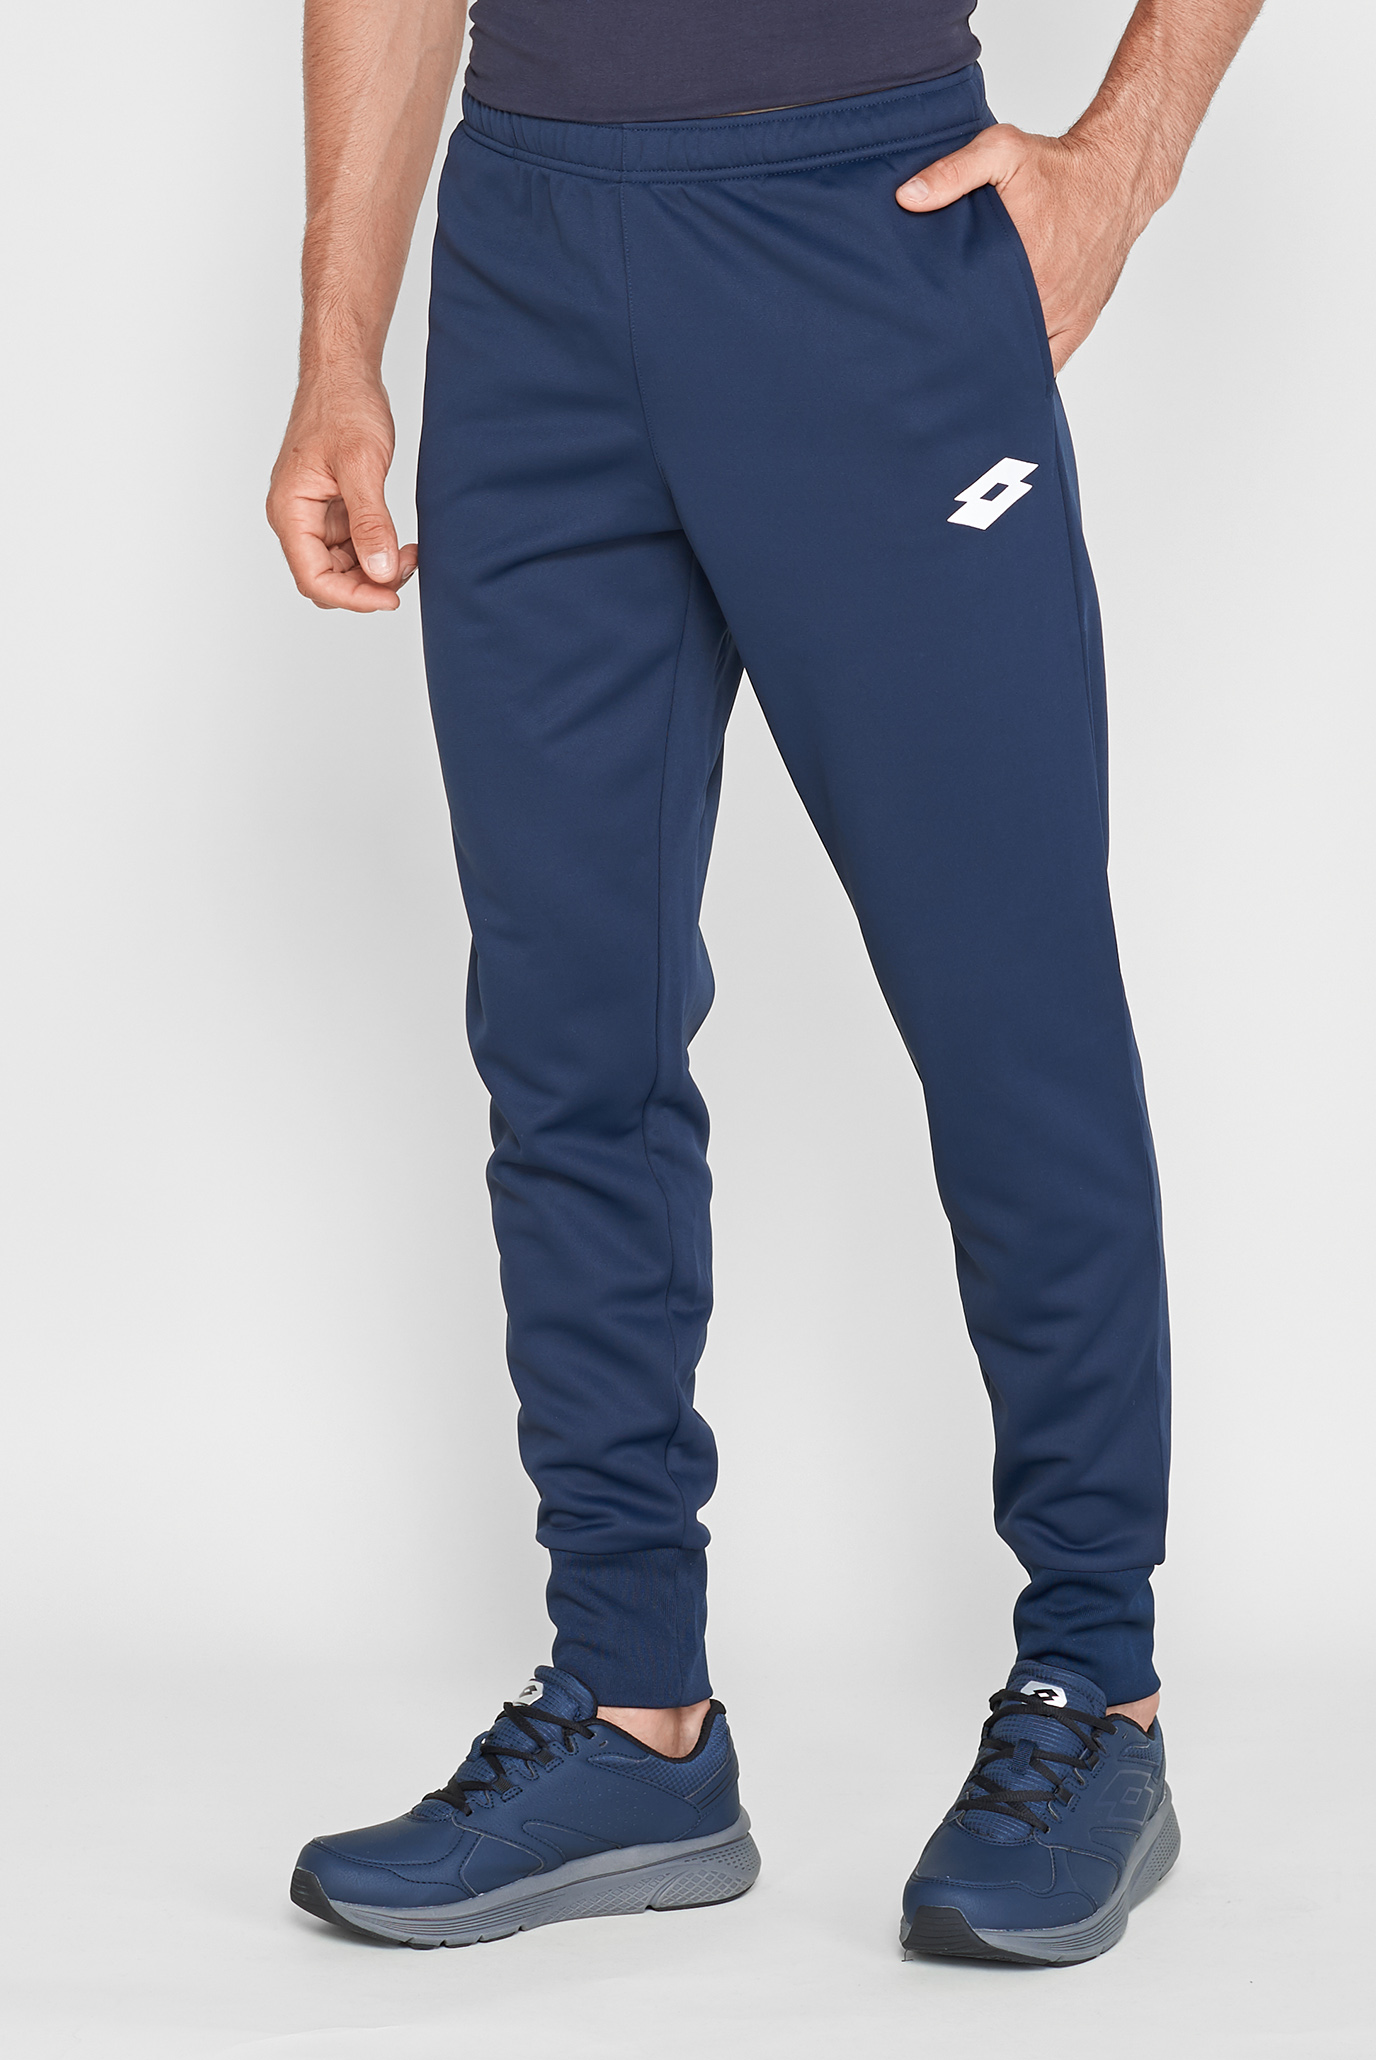 Мужские синие спортивные брюки DELTA PANT RIB PL 1